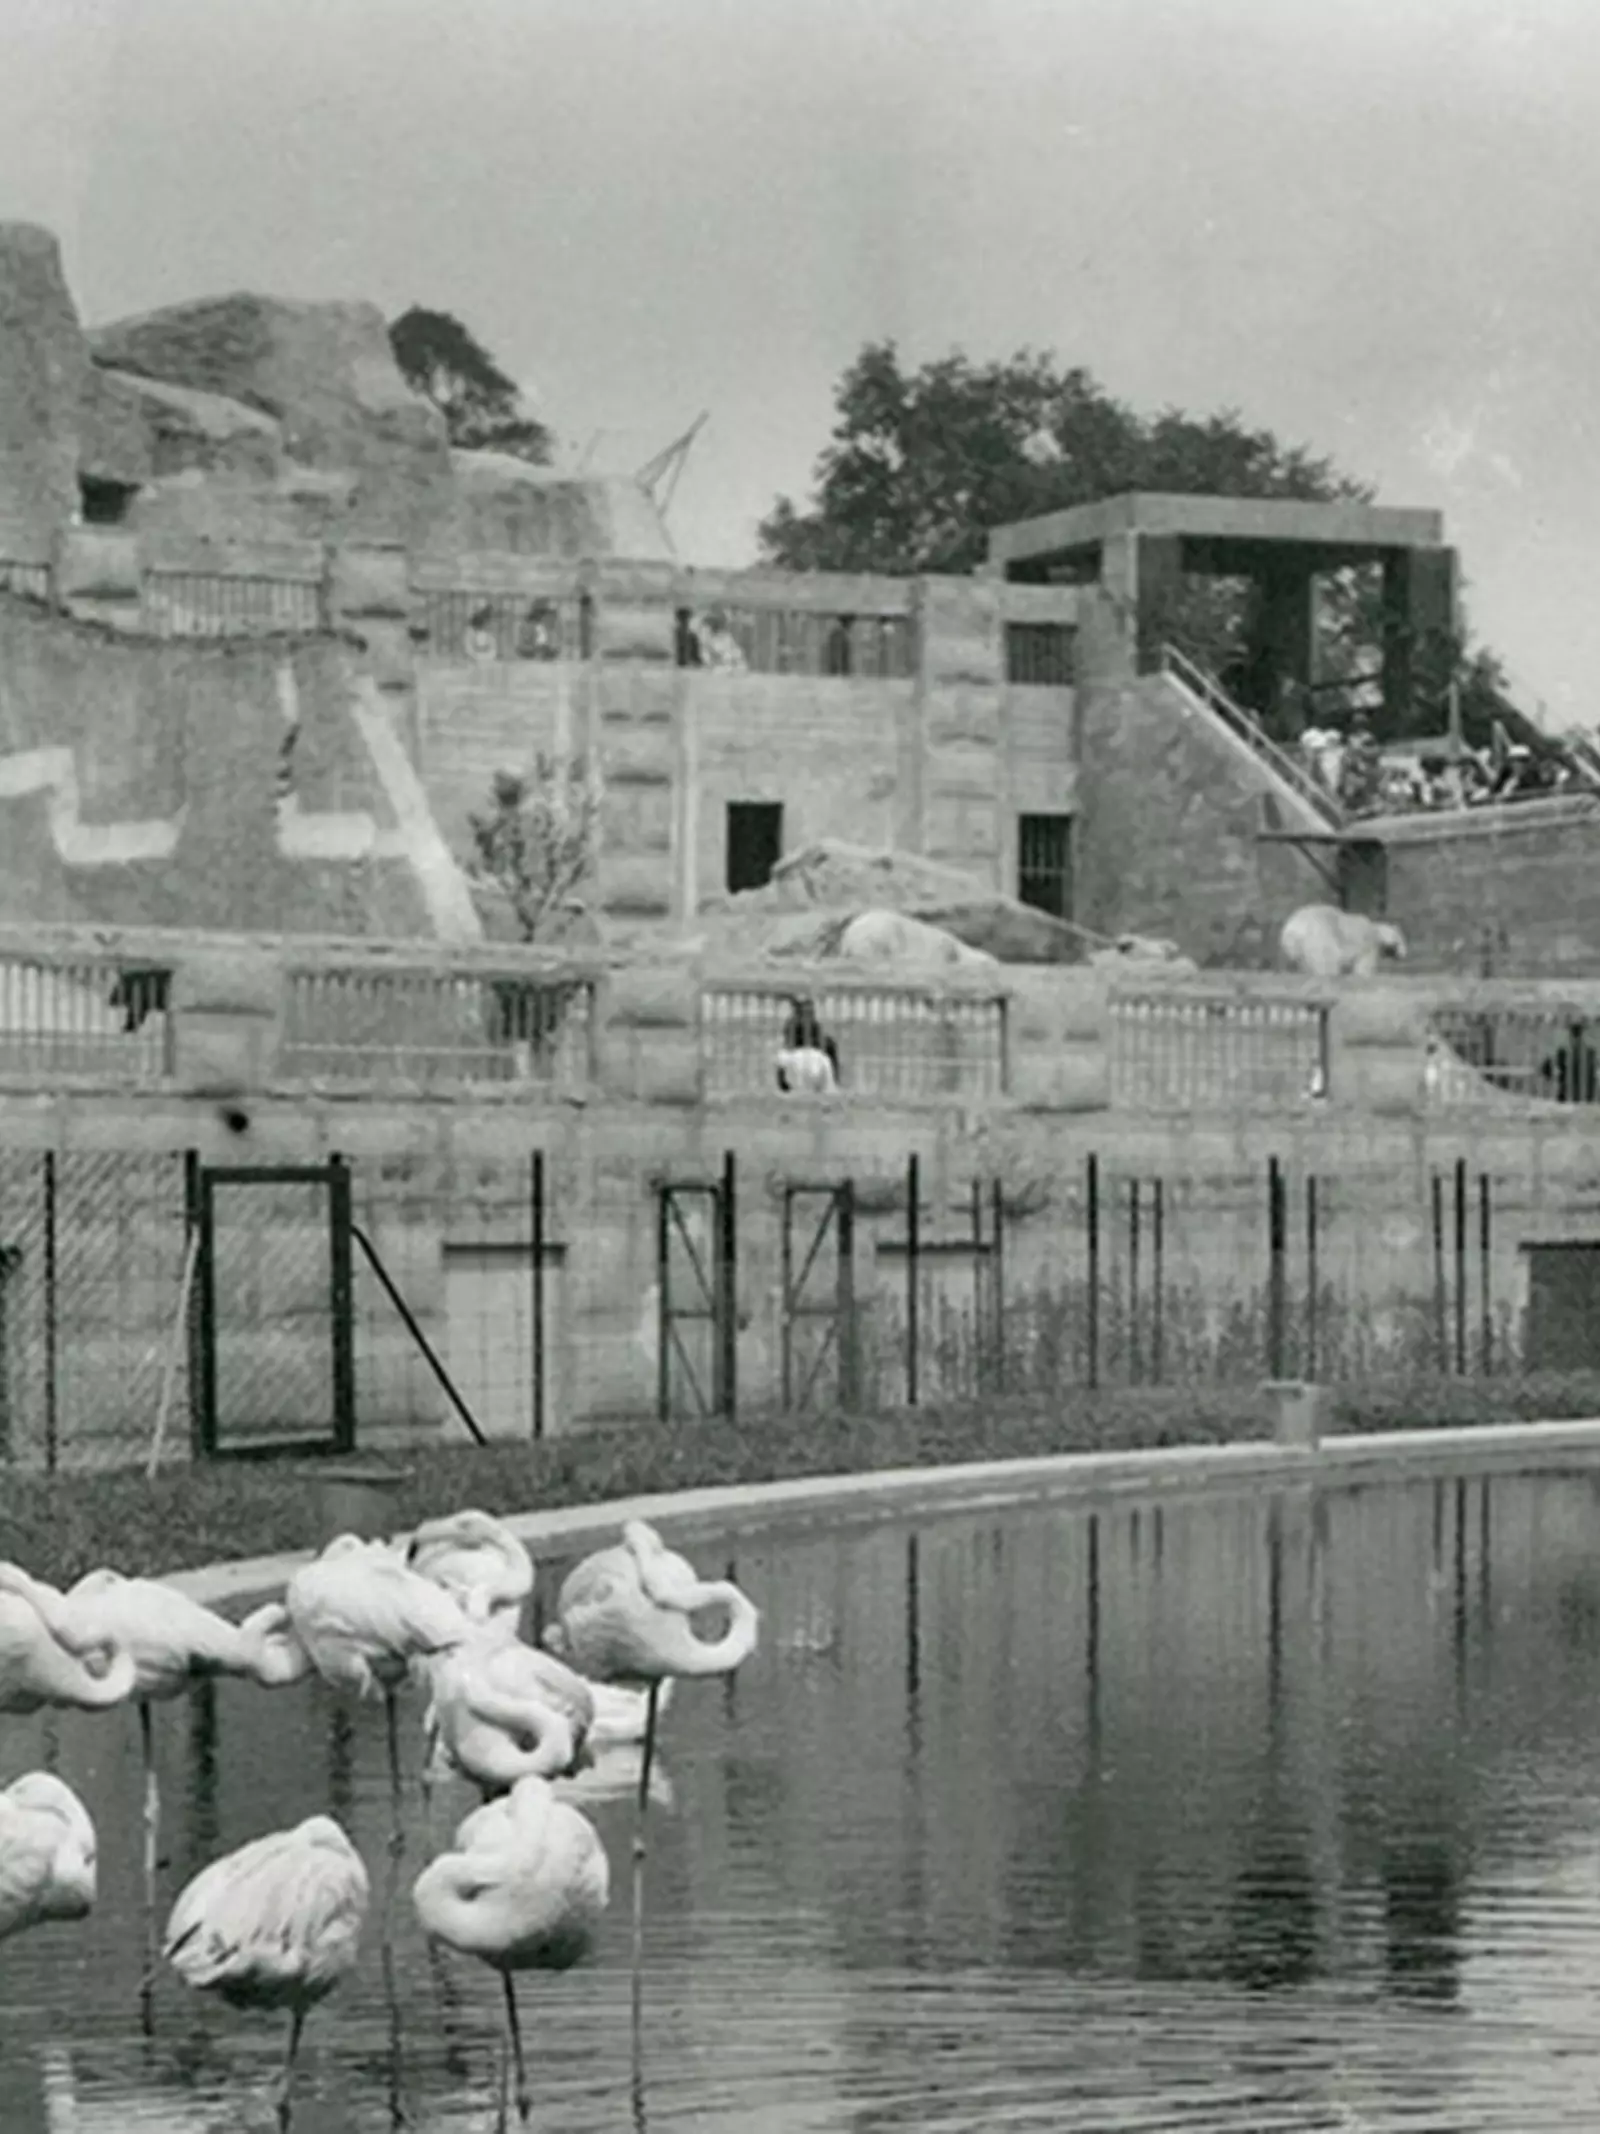 Historic photo of flamingos at Mappin Terraces at London Zoo